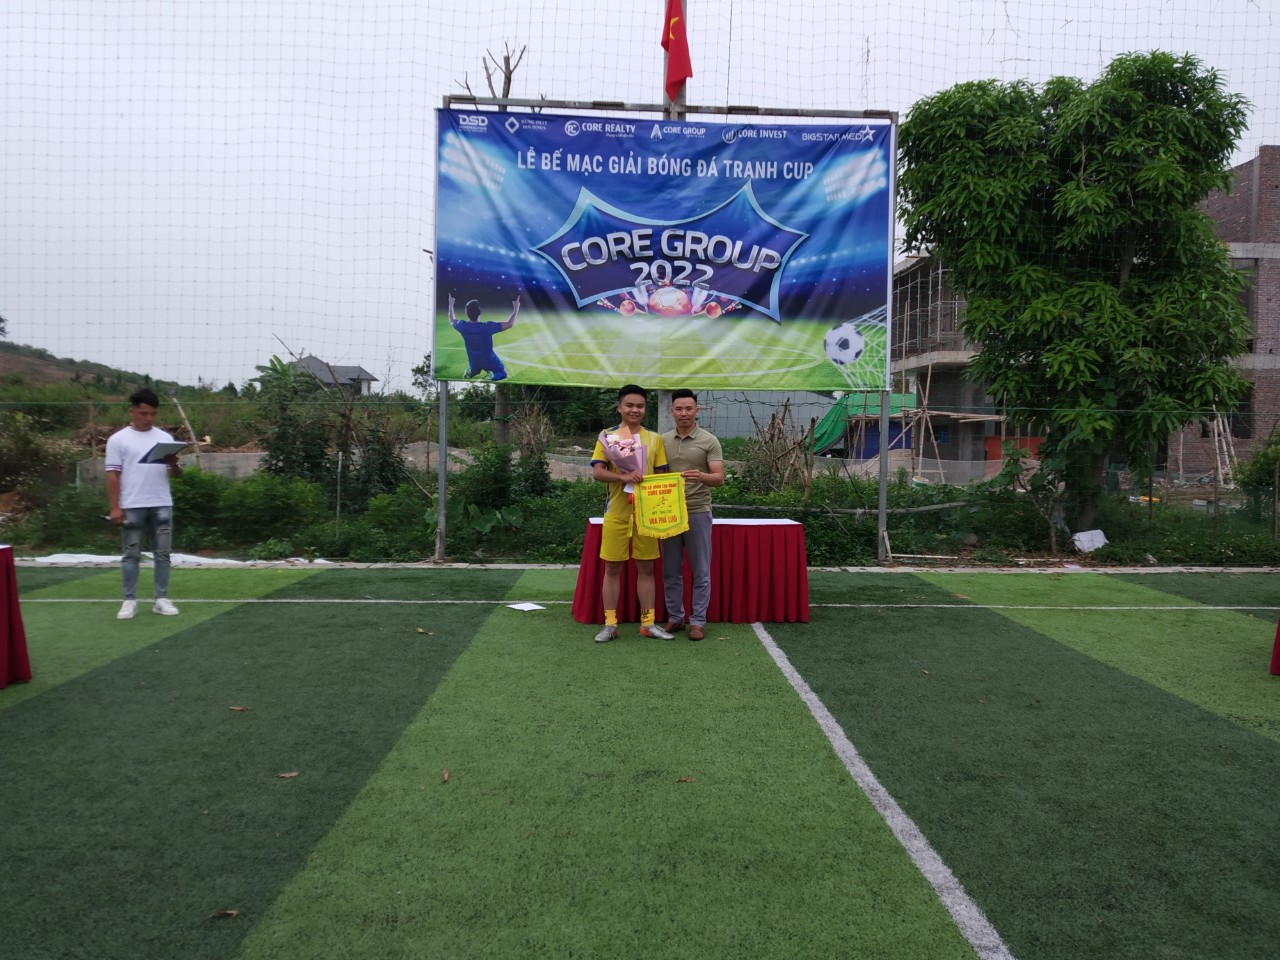 Ông Vũ Mạnh Thắng - GĐ Khối KD6 trao giải Vua phá lưới cho cầu thủ Phạm Hà Duy - FC LIÊN QUÂN